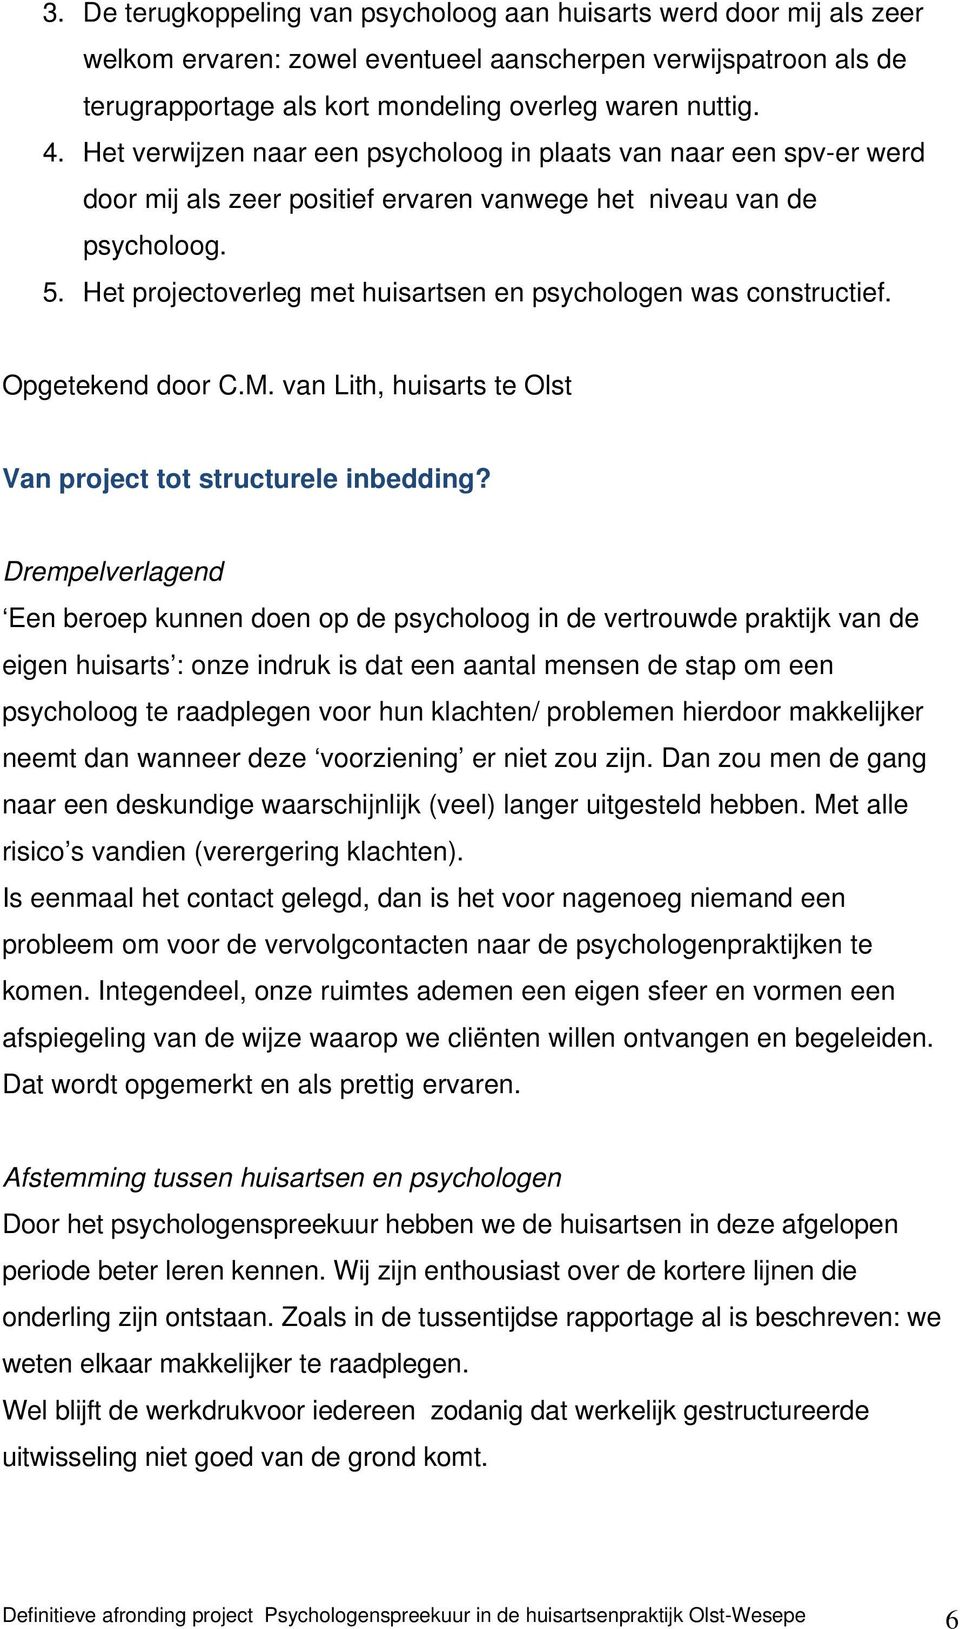 Het projectoverleg met huisartsen en psychologen was constructief. Opgetekend door C.M. van Lith, huisarts te Olst Van project tot structurele inbedding?